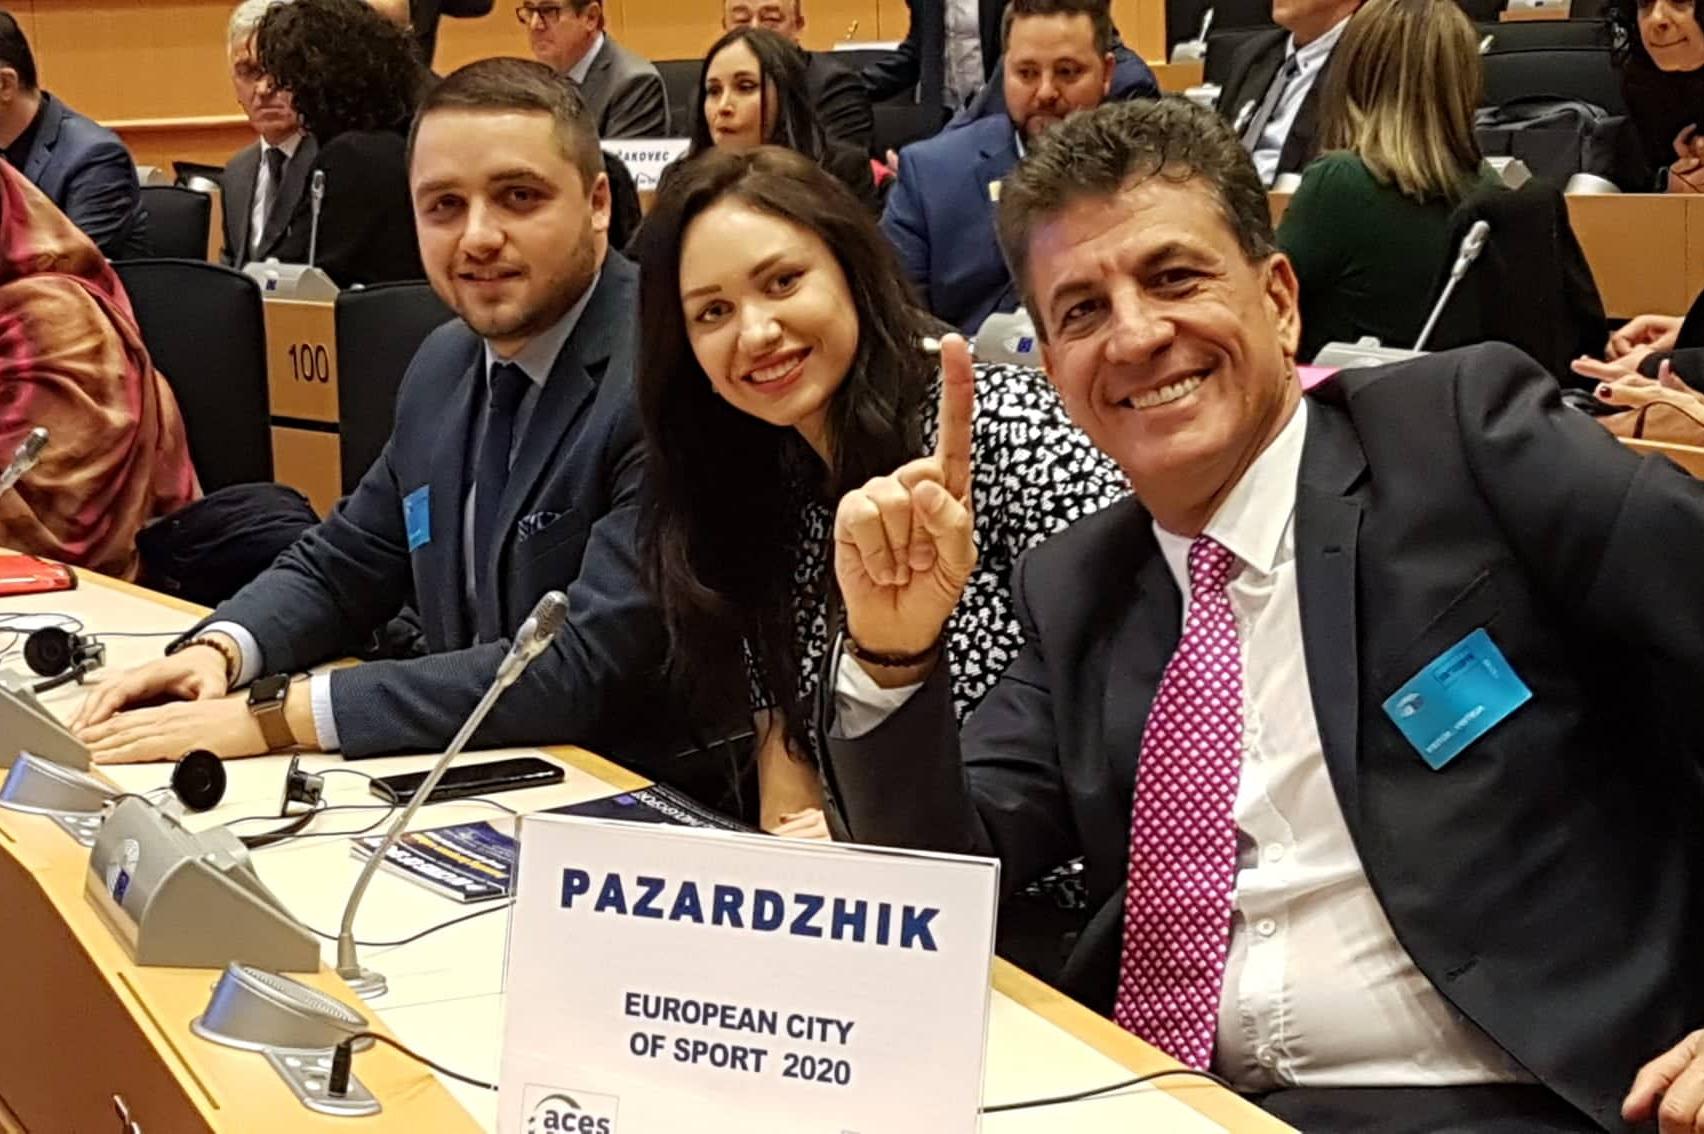 Кметът на Пазарджик получава титлата и знамето "Европейски град на спорта 2